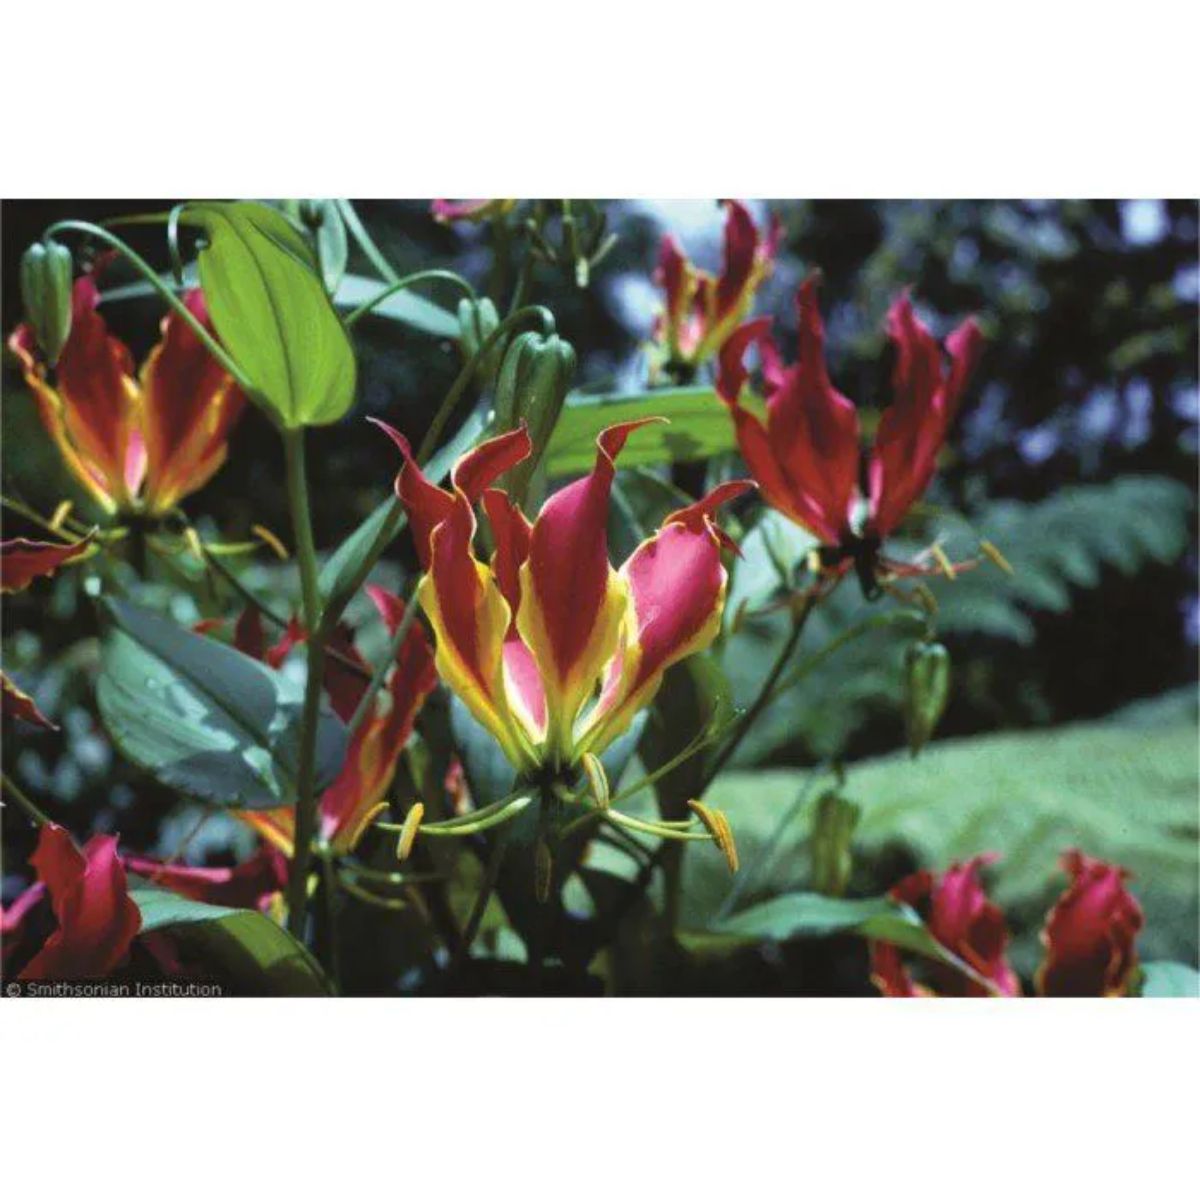 Gloriosa (Rothschildiana) - cartela com 1 bulbo - Foto 1